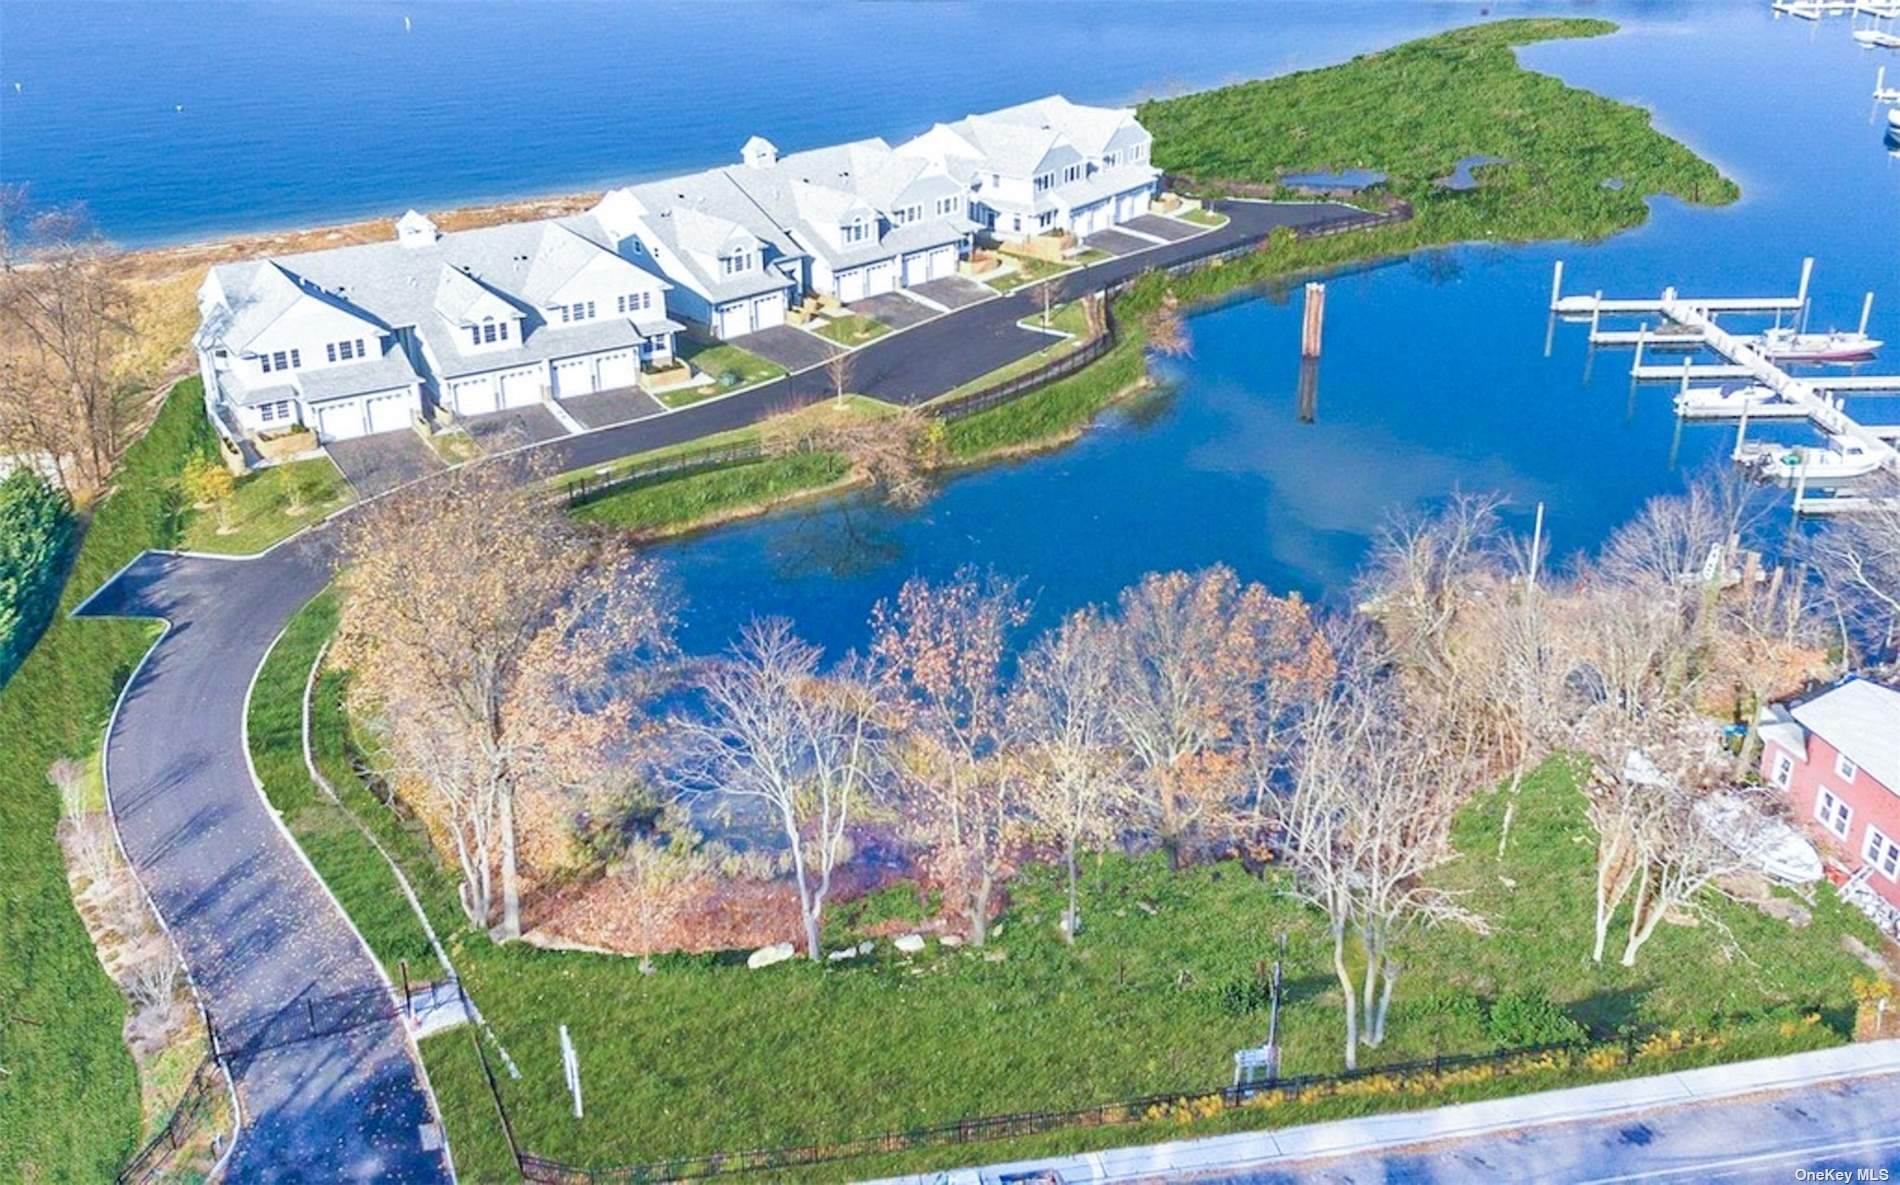 Жилой аренды в 1 Sea Isle Landing Glen Cove, Нью-Йорк 11542 Соединенные Штаты